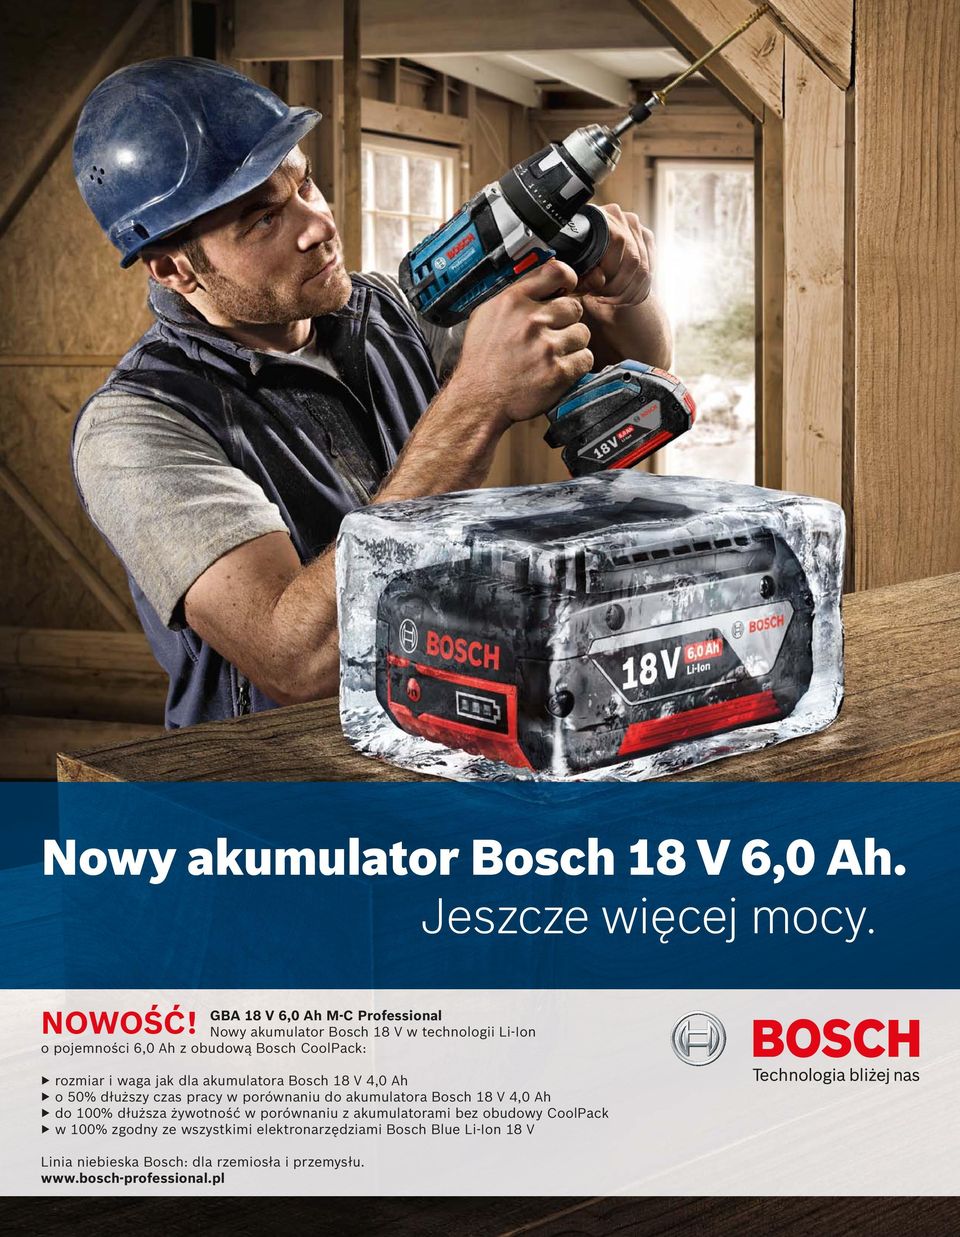 rozmiar i waga jak dla akumulatora Bosch 18 V 4,0 Ah o 50% dłuższy czas pracy w porównaniu do akumulatora Bosch 18 V 4,0 Ah do 100%